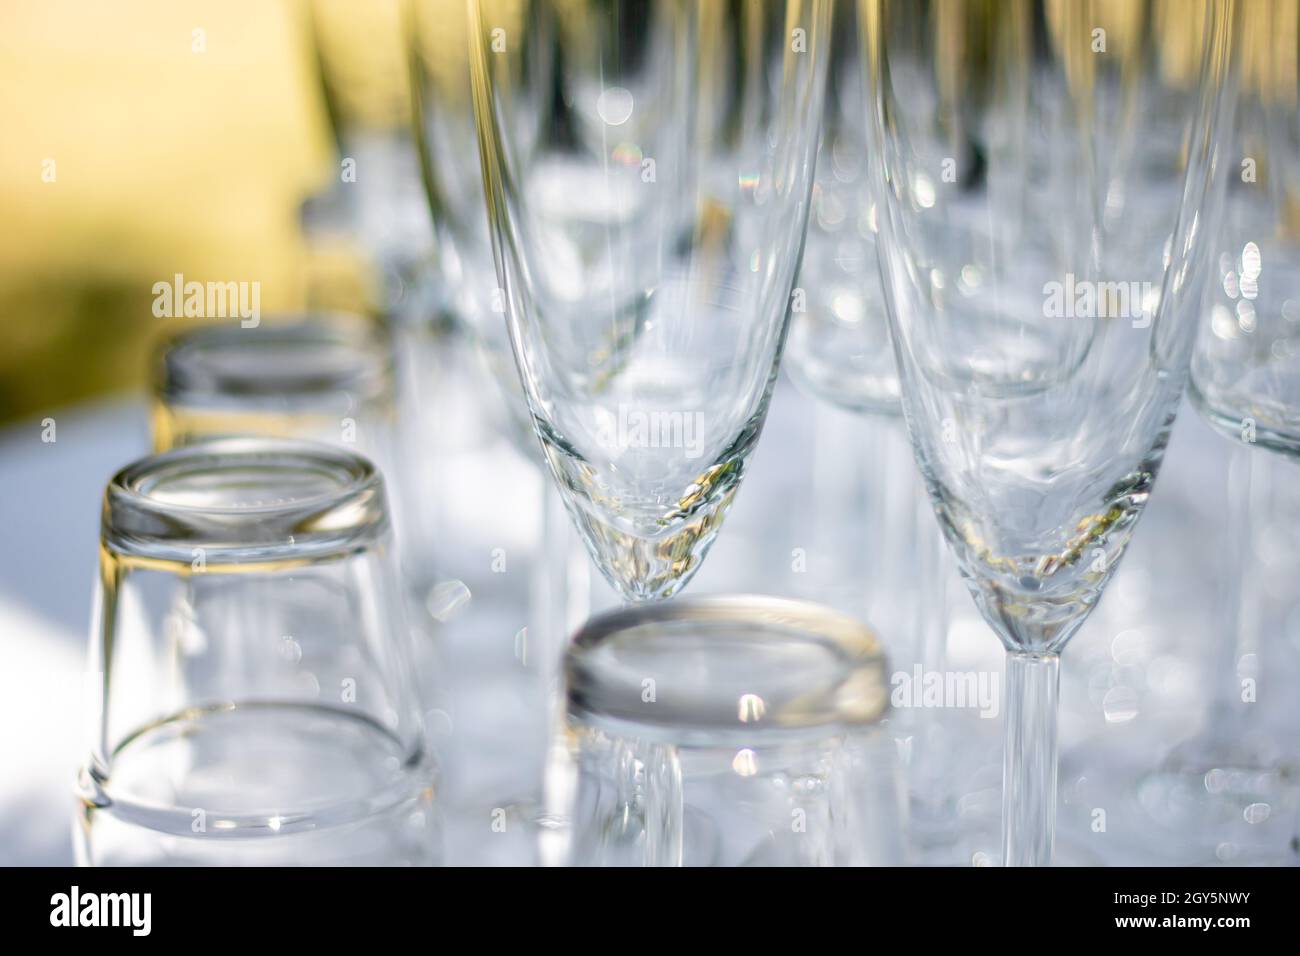 Nahaufnahme von verschiedenen Gläsern, Sektgläsern und Cocktailgläsern auf einem Tisch mit weißer Tischdecke, Fokus auf Sektgläser Stockfoto